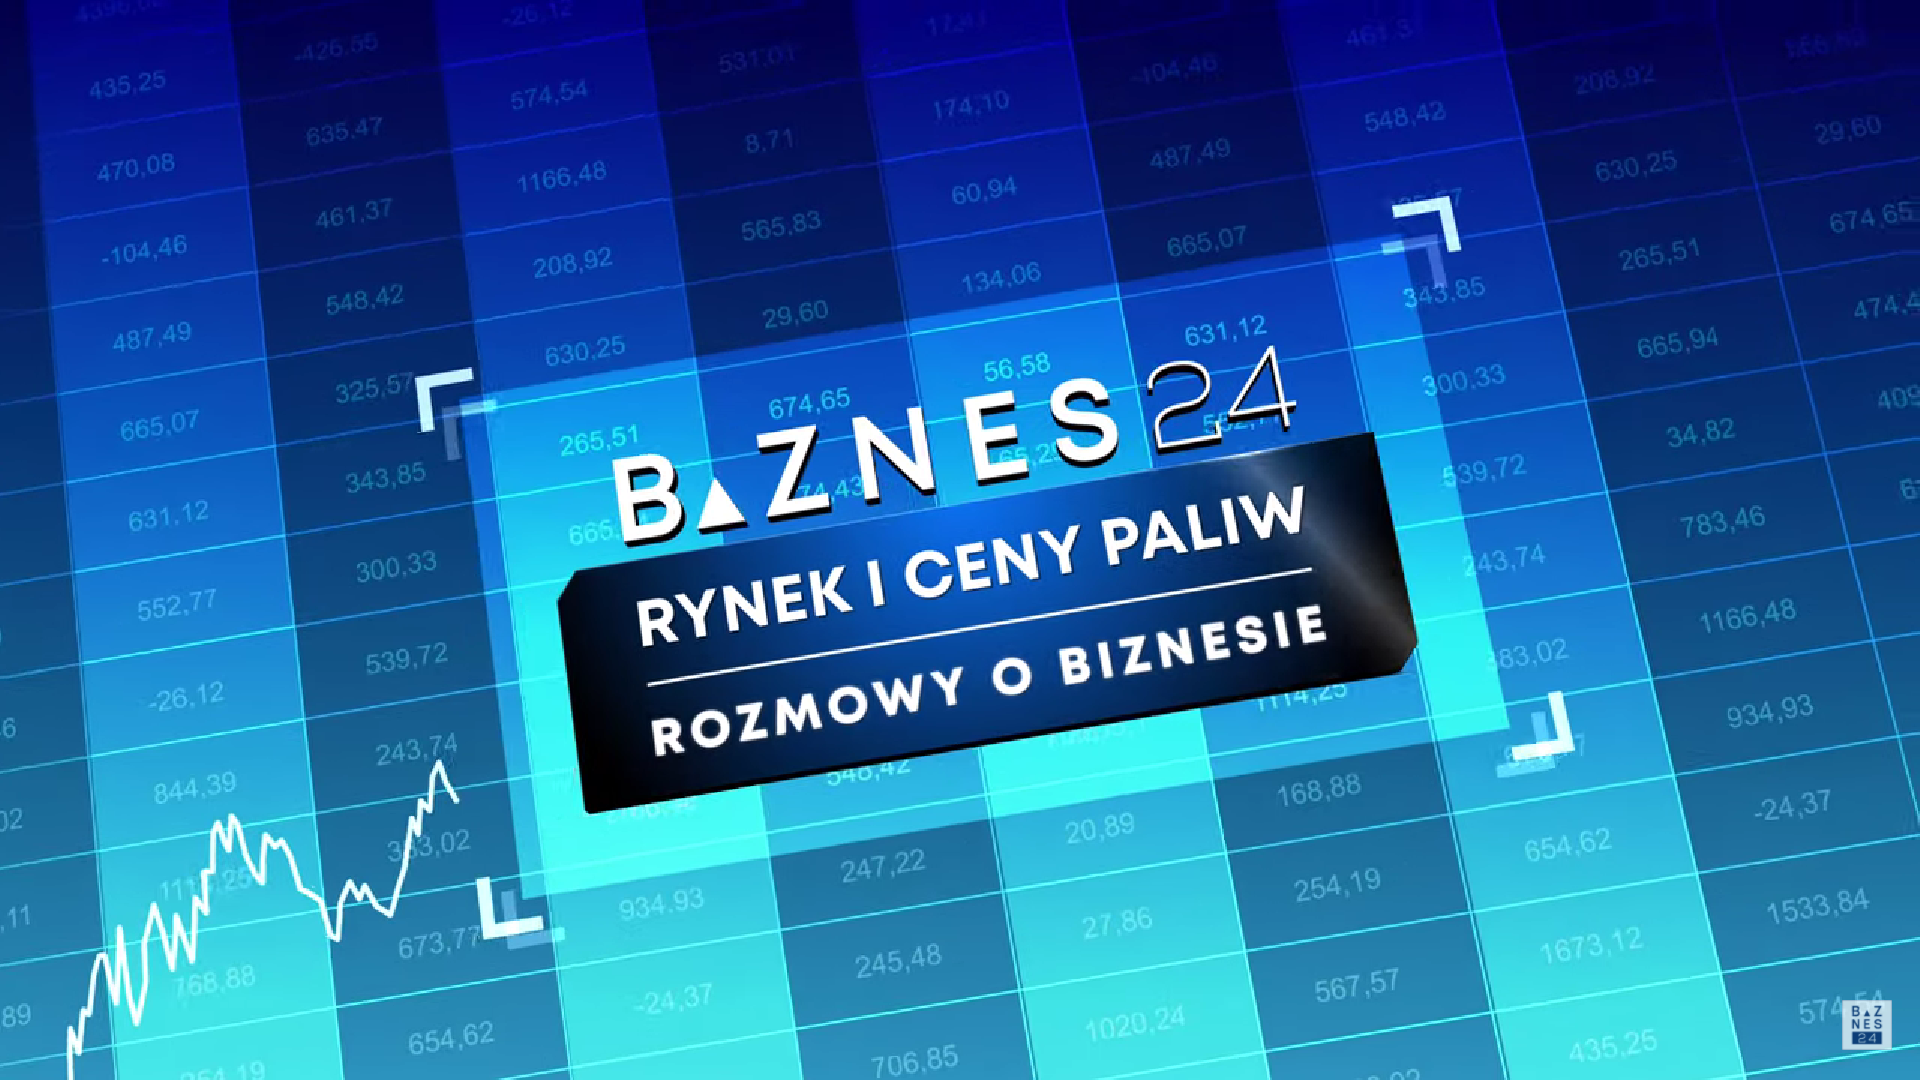 Rynek i Ceny Paliw. Debata w telewizji BIZNES24